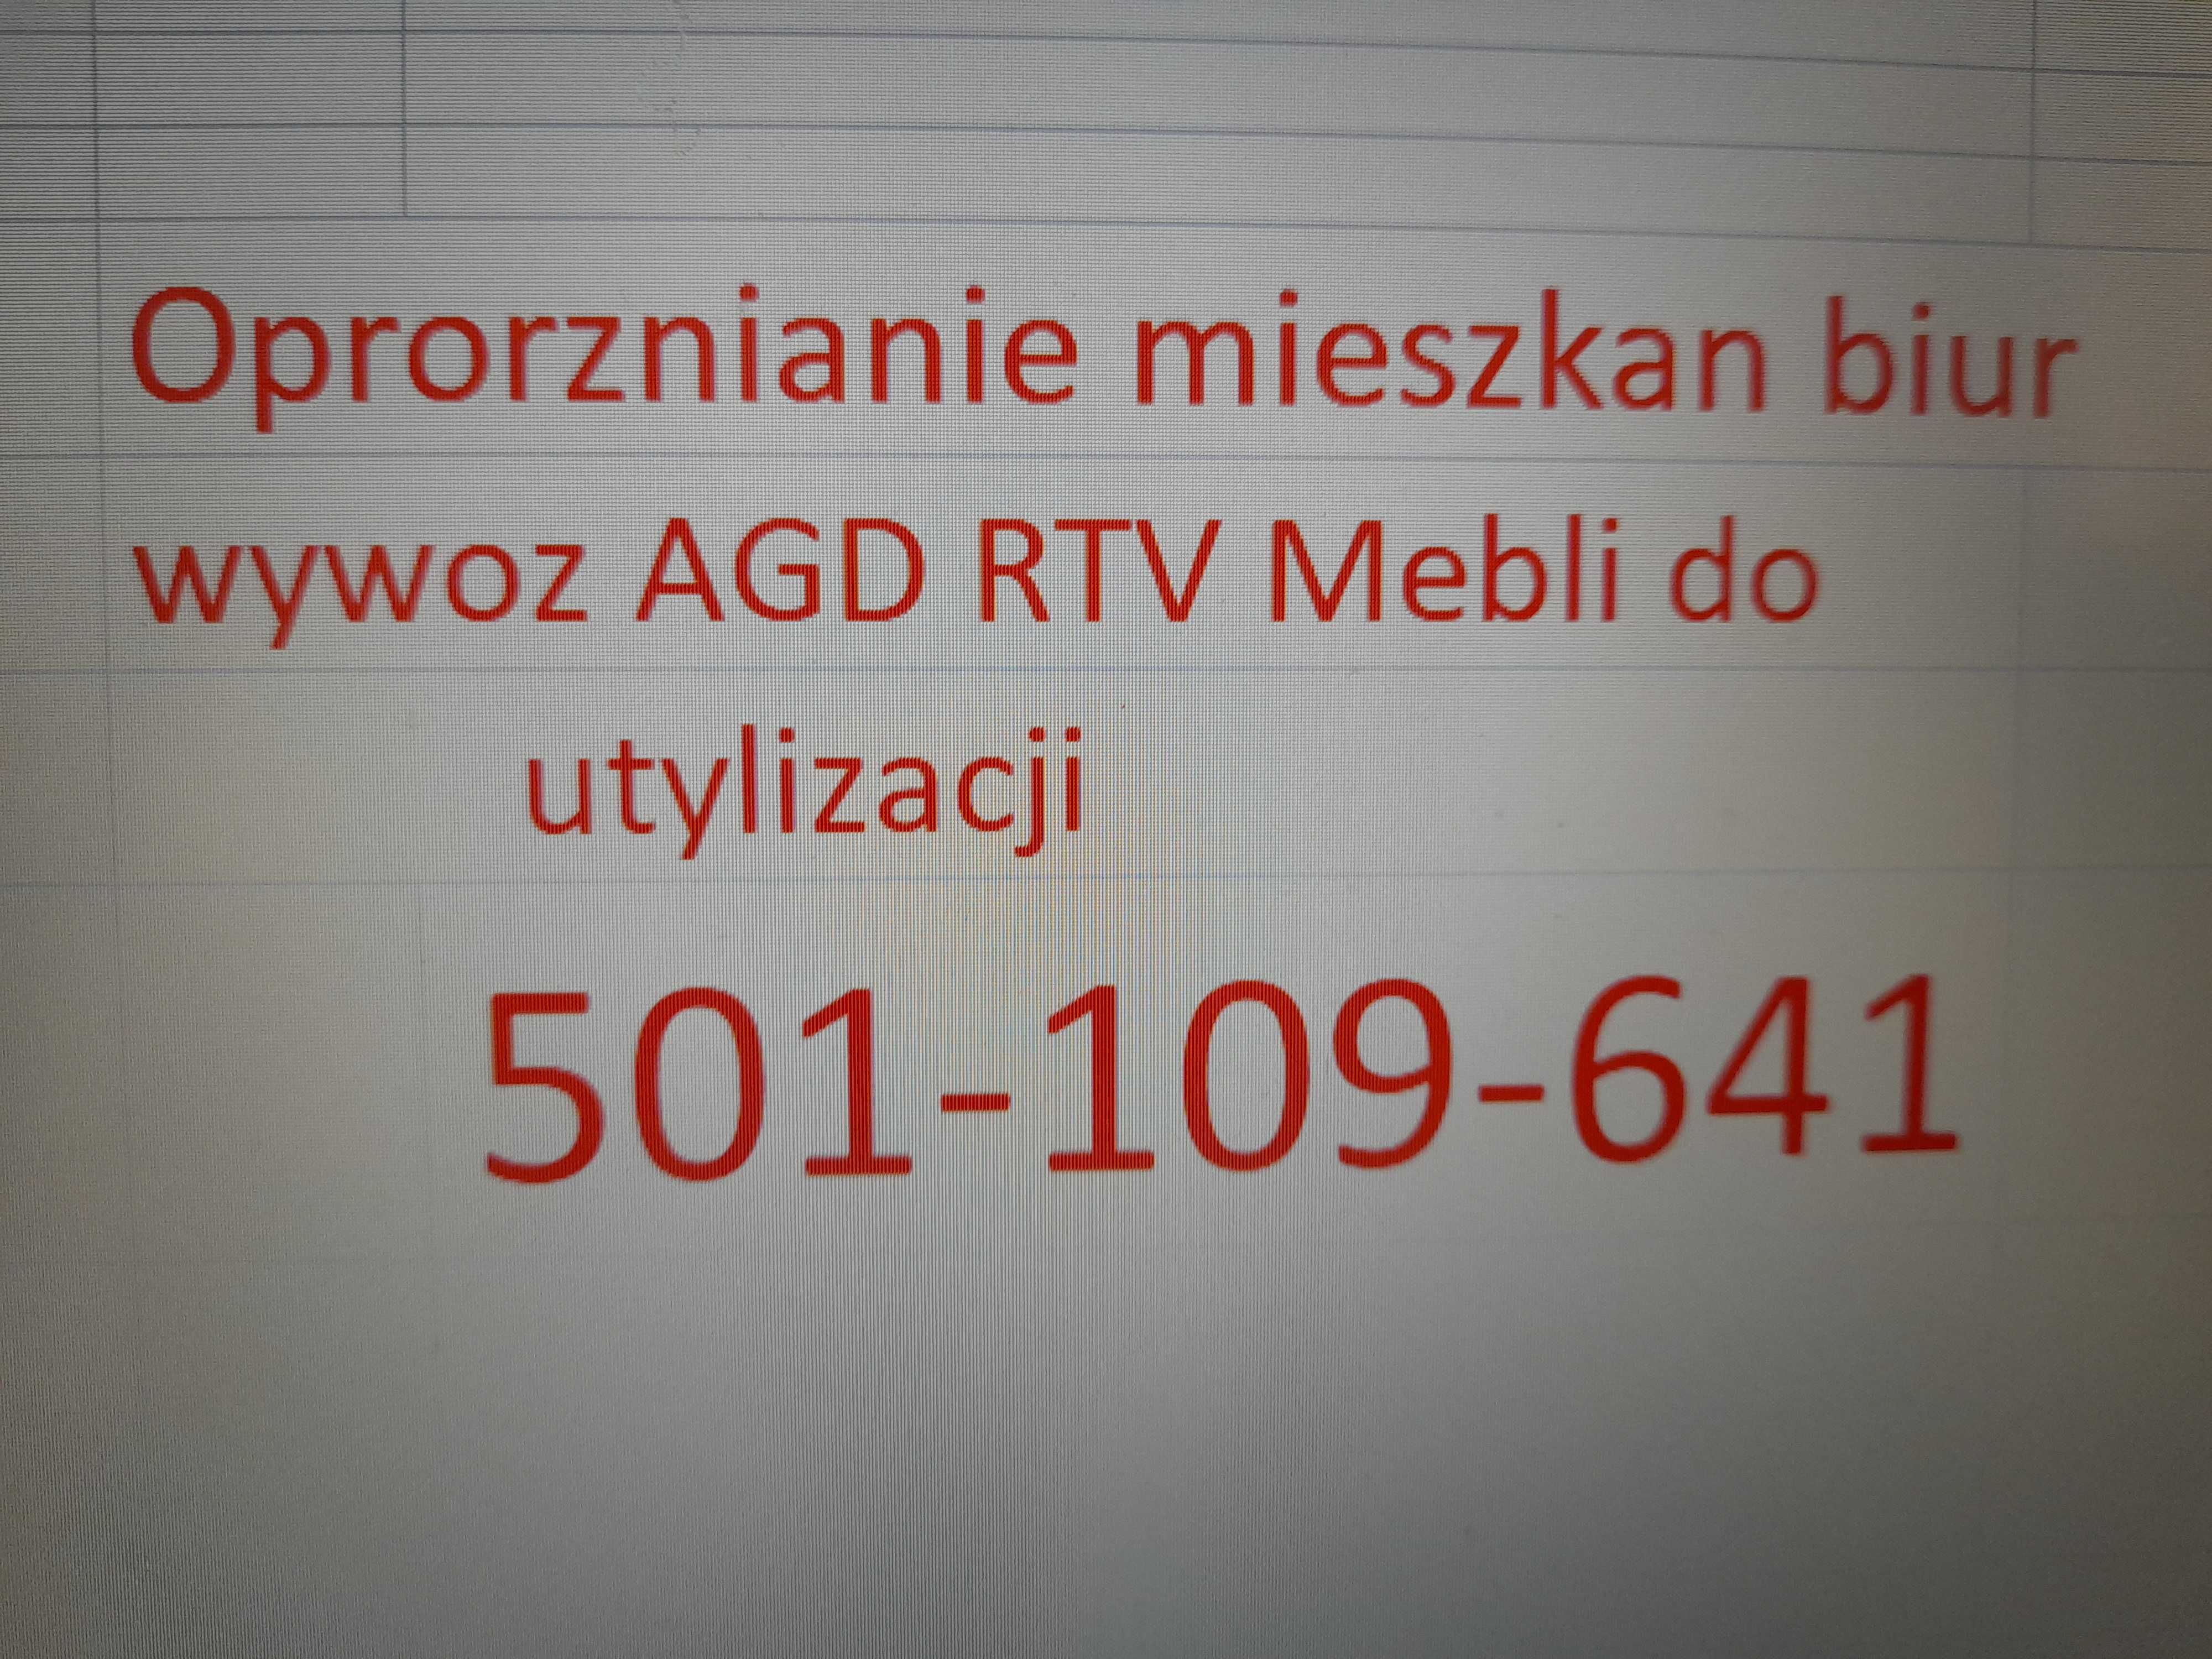 Oproznianie mieszkan biur Wywoz AGD RTV Mebli utylizacjia Dabrowa gor